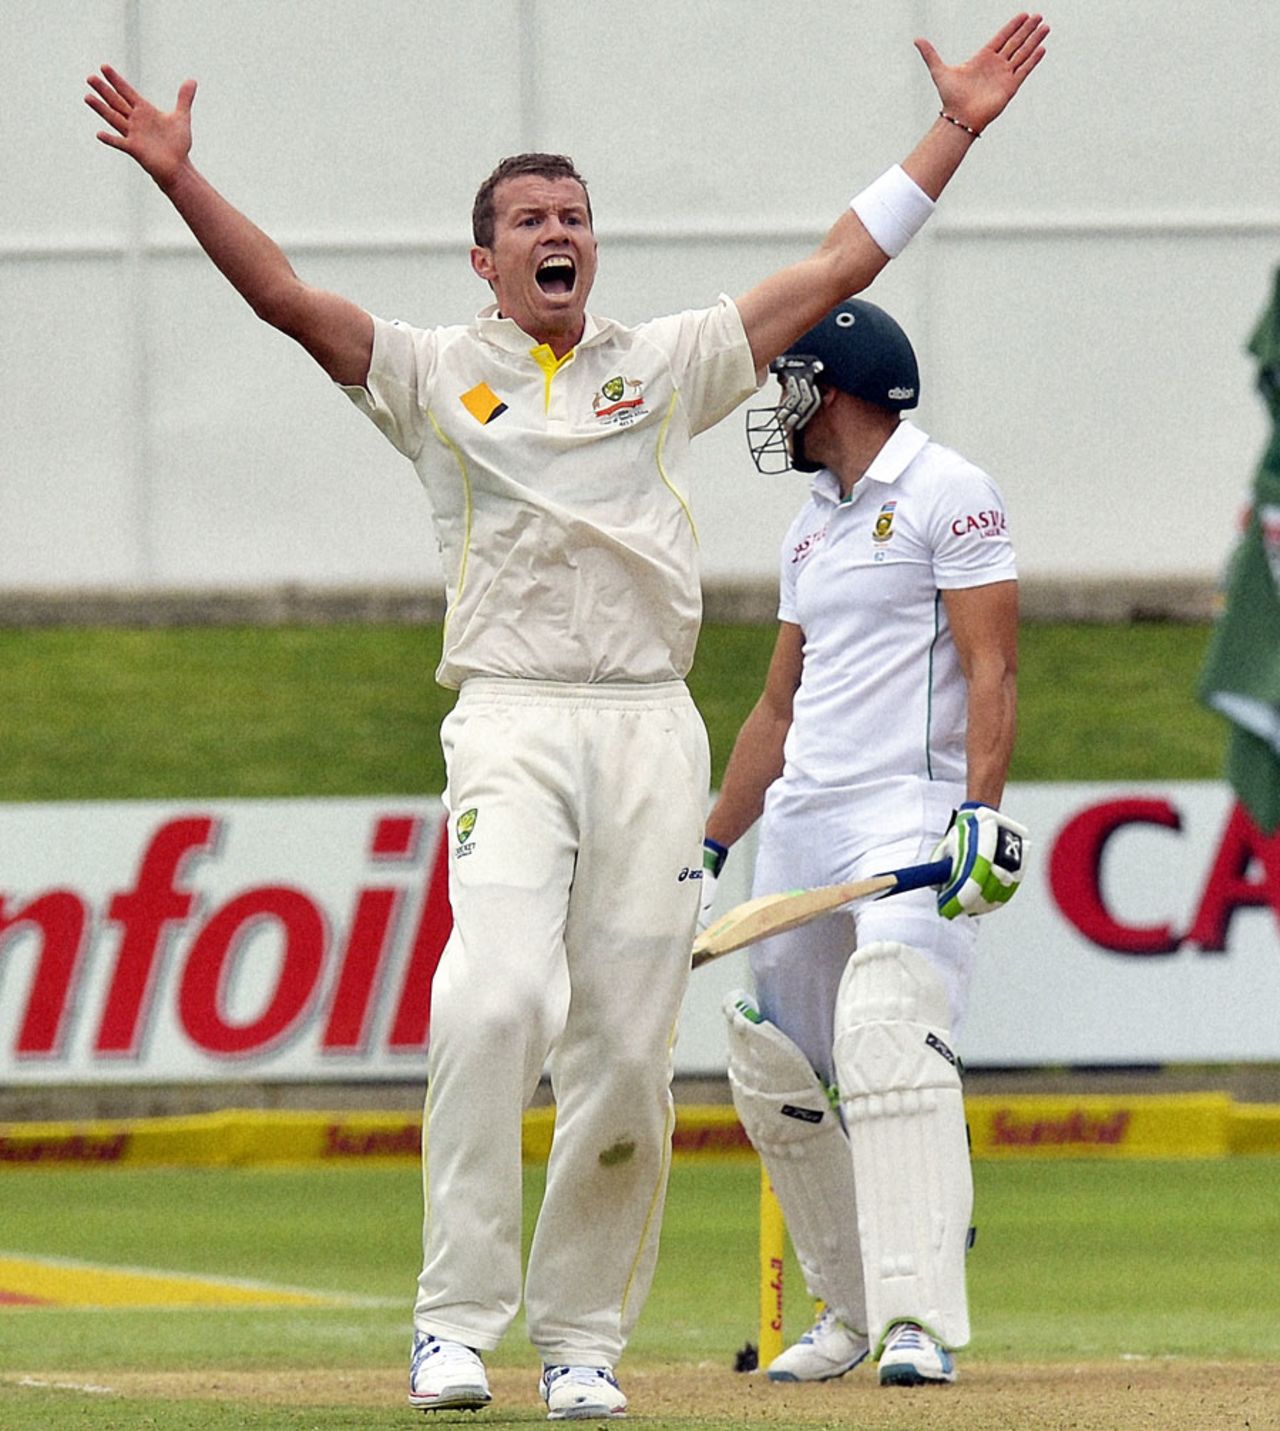 Peter Siddle appeals for an lbw against Faf du Plessis, South Africa v Australia, 2nd Test, Port Elizabeth, 1st day, February 20, 2014